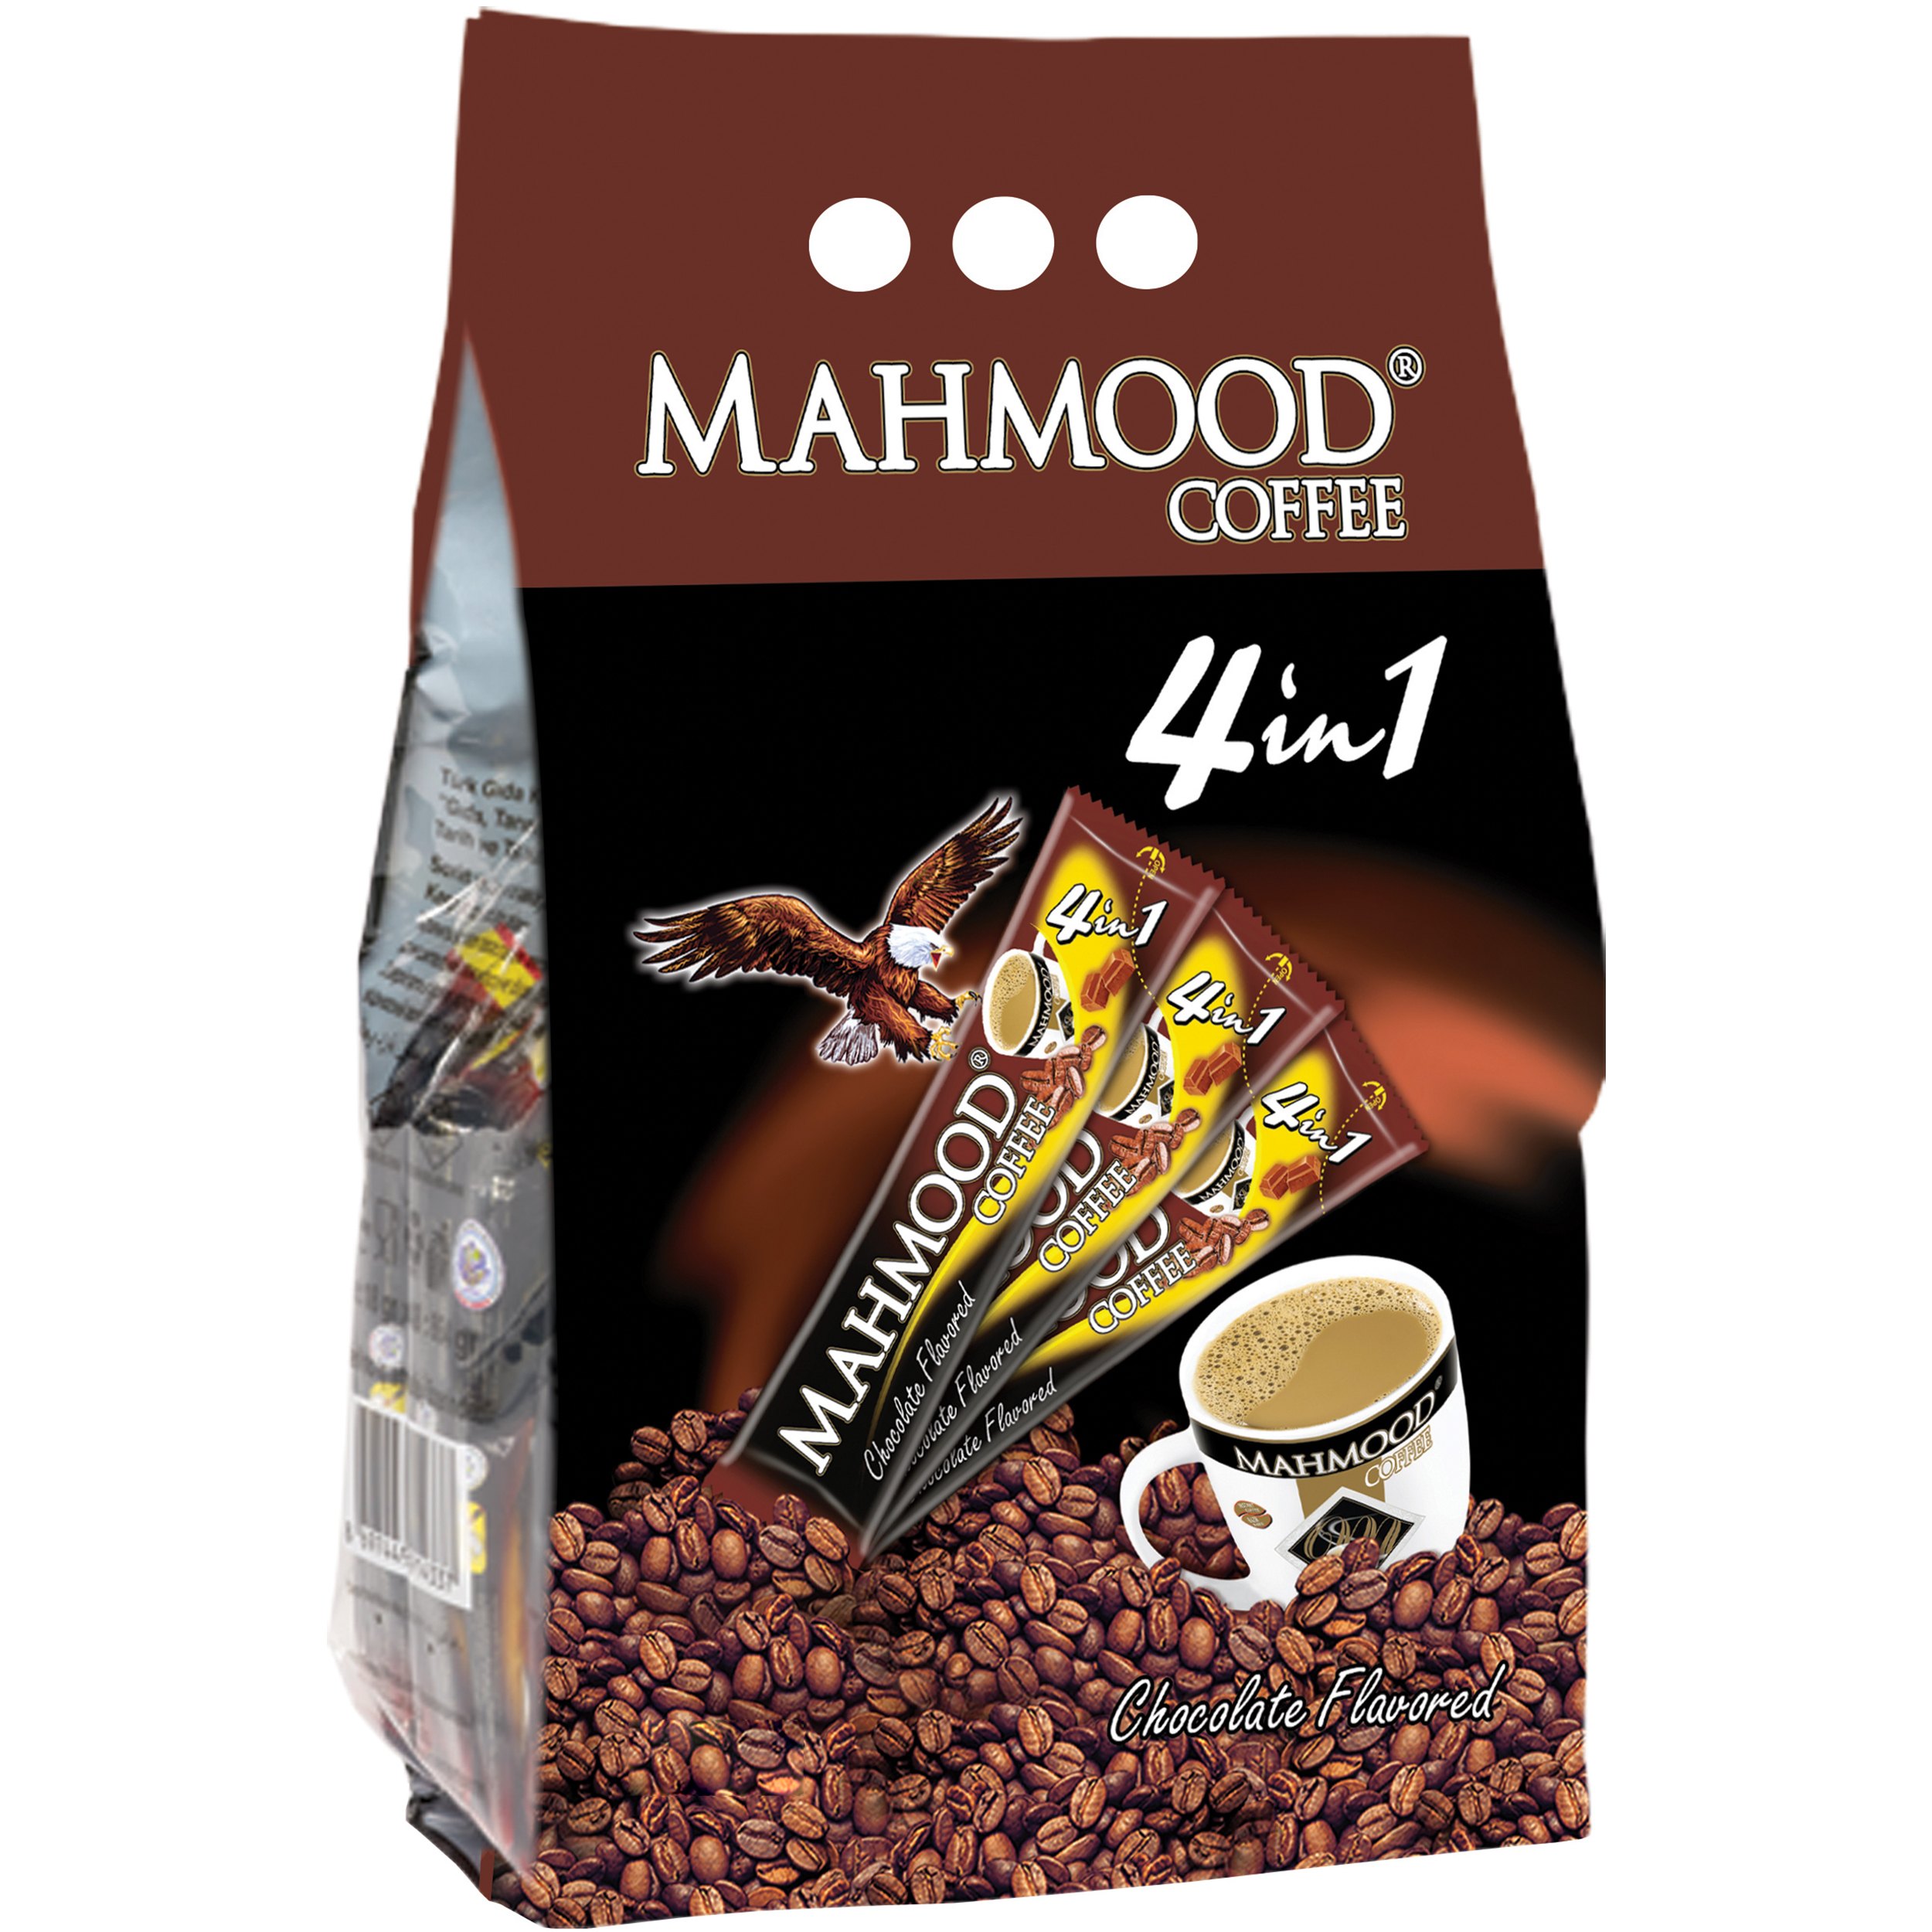 پودر قهوه فوری 4 در 1 محمود با طعم شکلات - 24 عددی